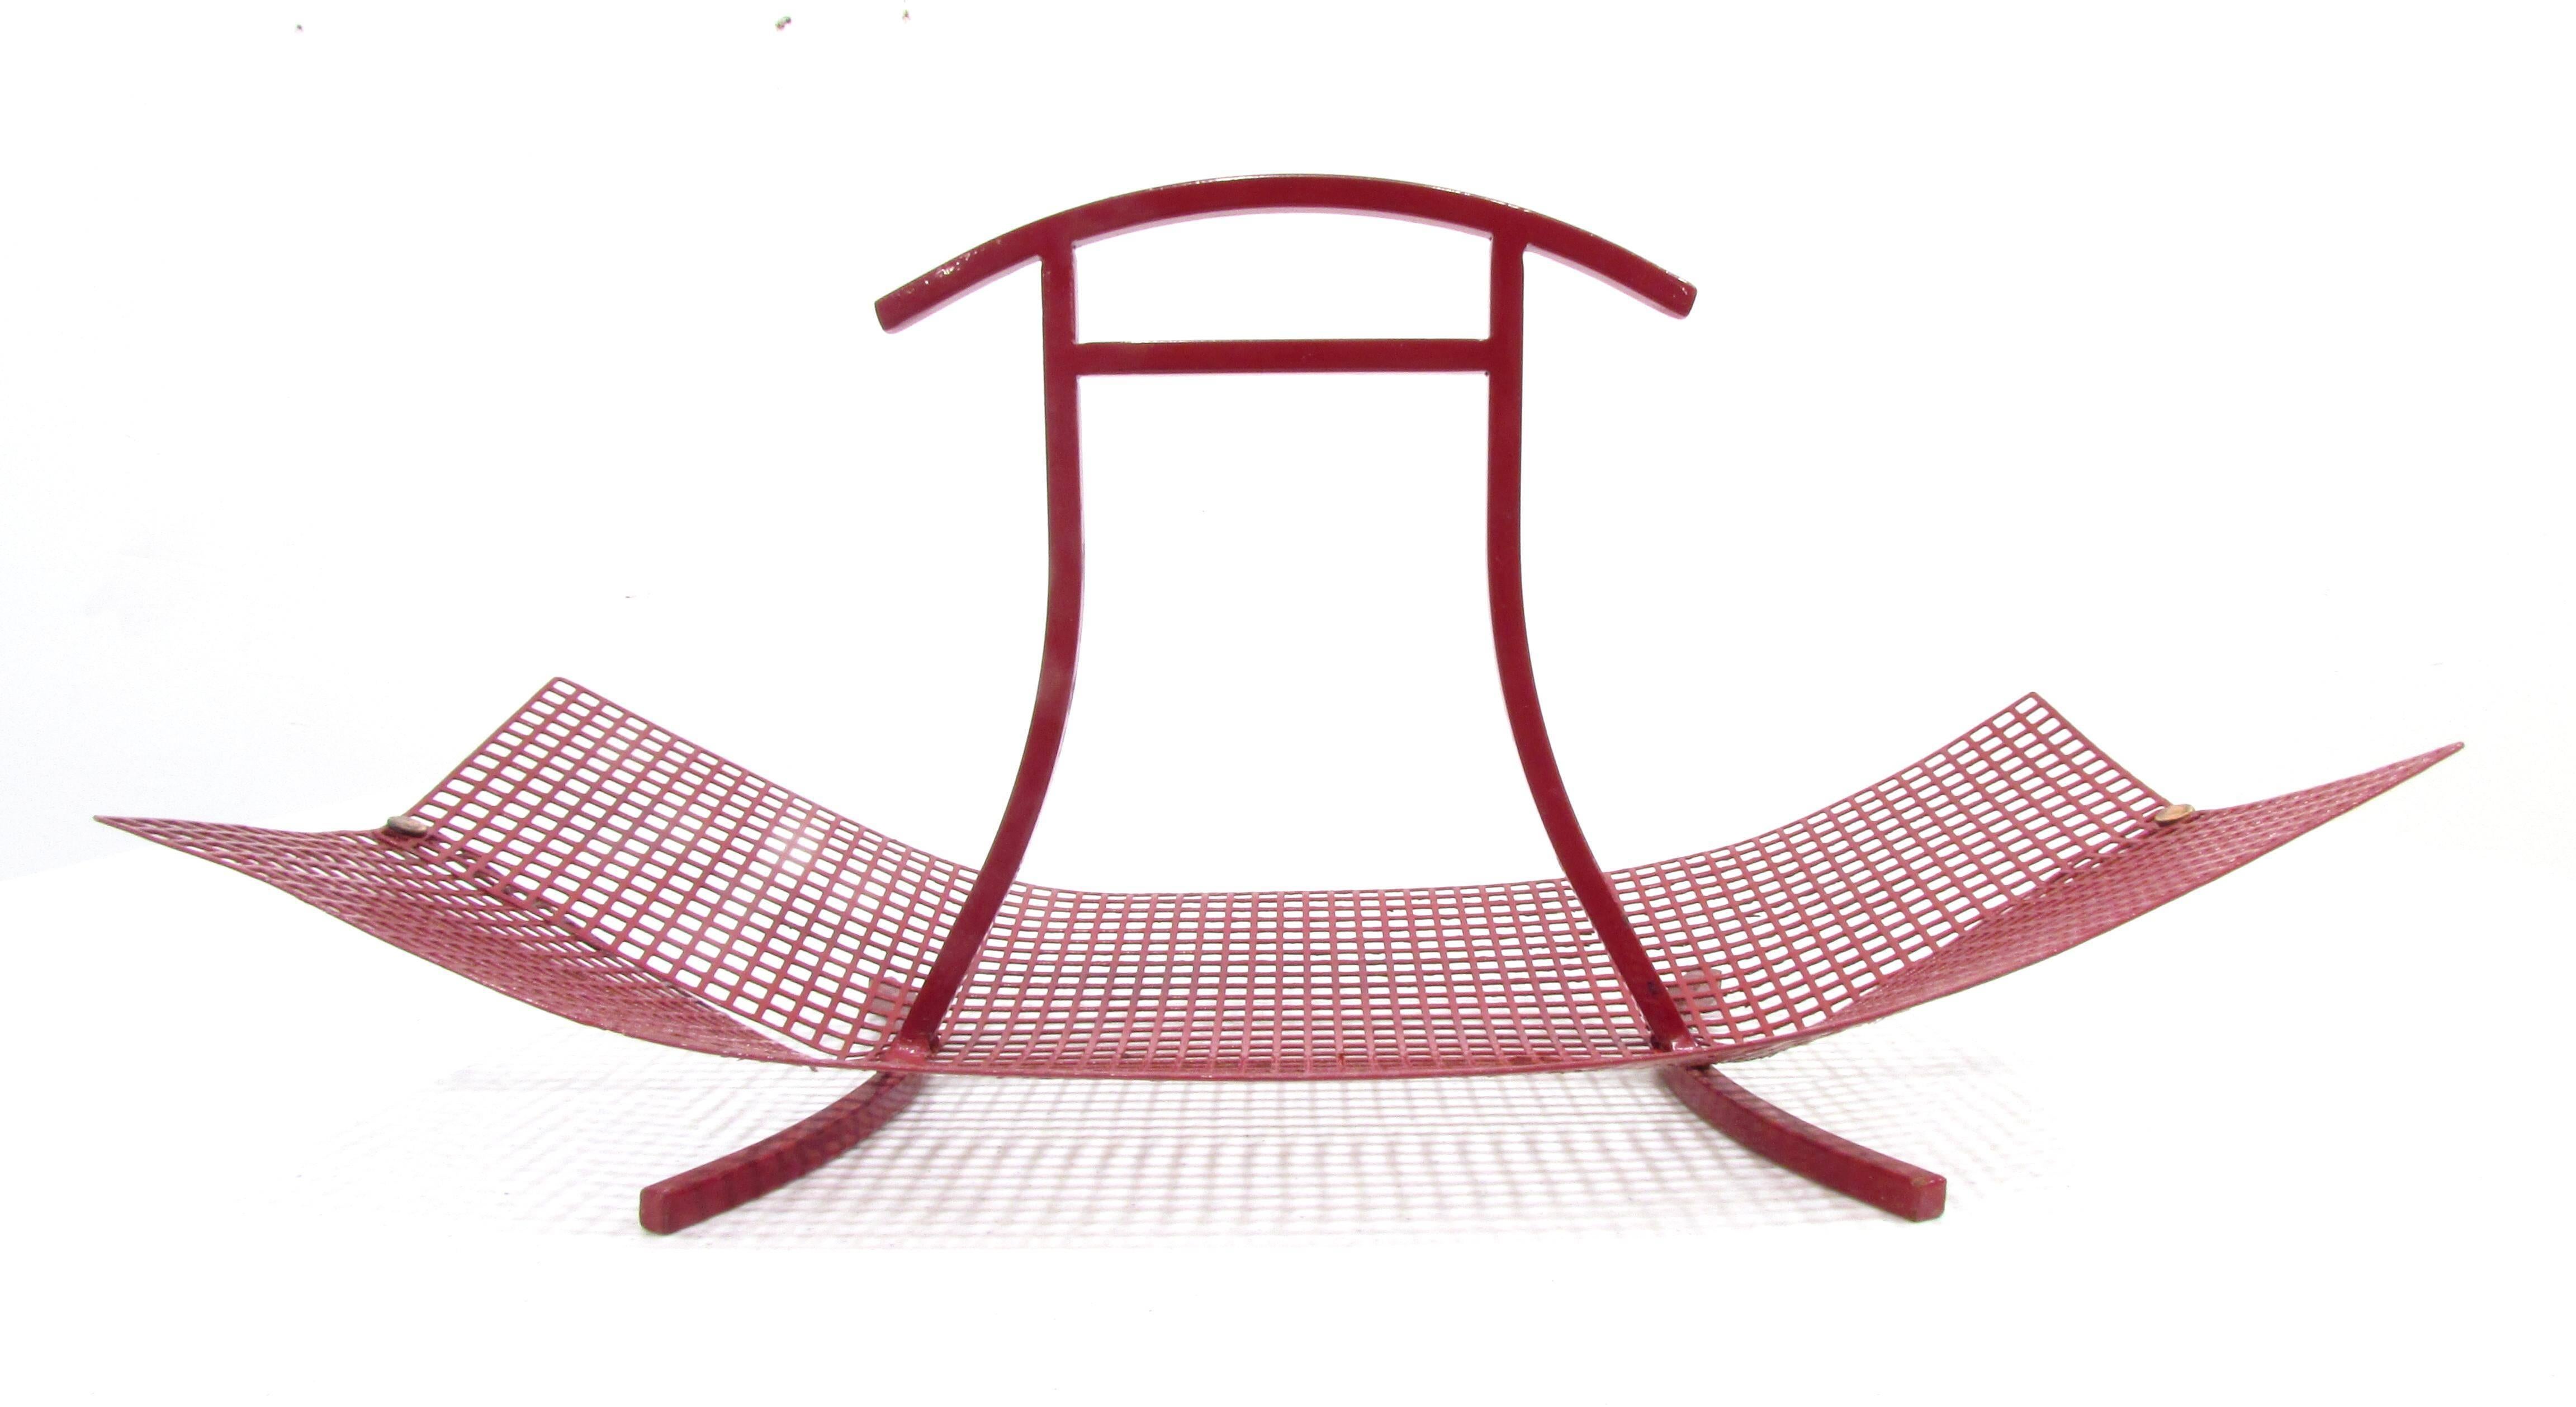 Beautiful simple designed basket red enameled grid metal folded inward with copper rivets in the style Wiener Werksattee Josef Hoffmann.